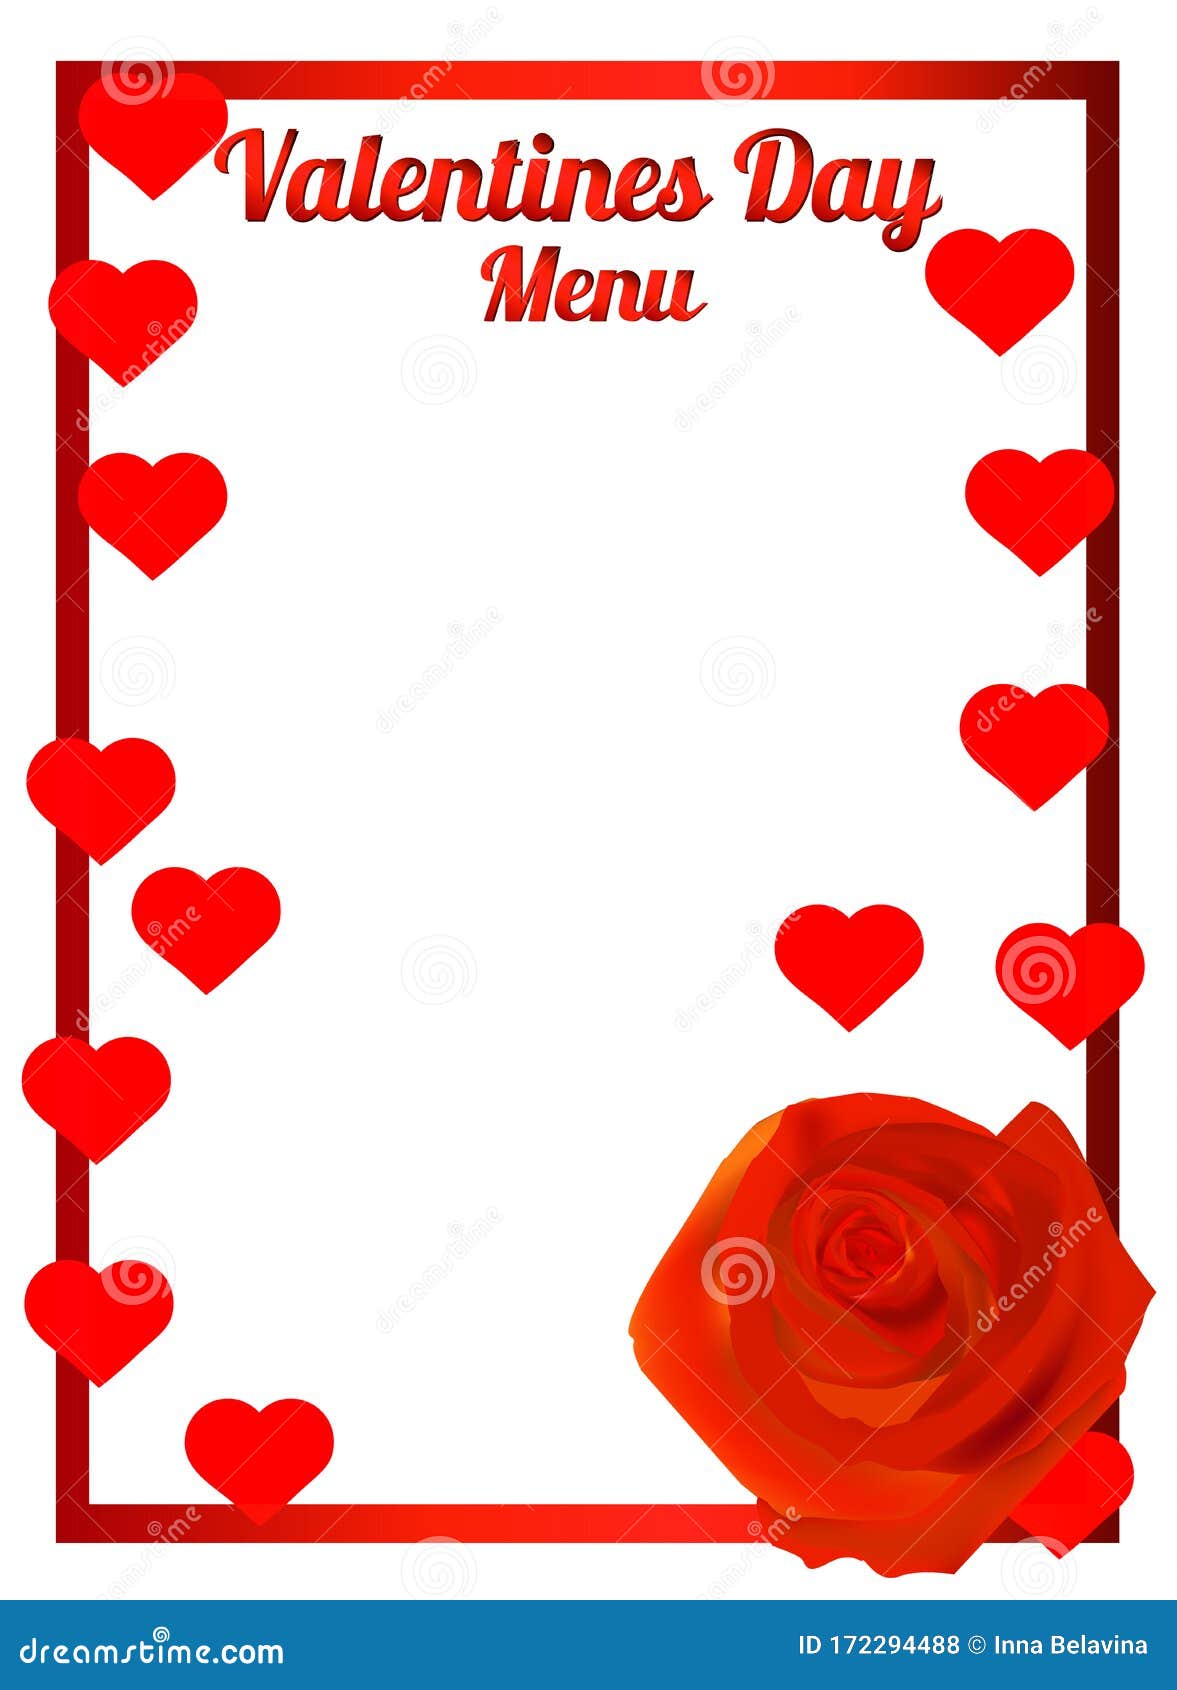 Với những bức tranh và hình ảnh thiết kế độc đáo trên menu Valentine\'s Day, bạn sẽ có bữa tối ngọt ngào và đầy ý nghĩa với người yêu của mình. Những hình ảnh vui nhộn và lãng mạn trên menu sẽ khiến bạn cảm thấy xuân tình nguyện. Đừng bỏ lỡ cơ hội để khám phá những hình ảnh tuyệt đẹp này nào!